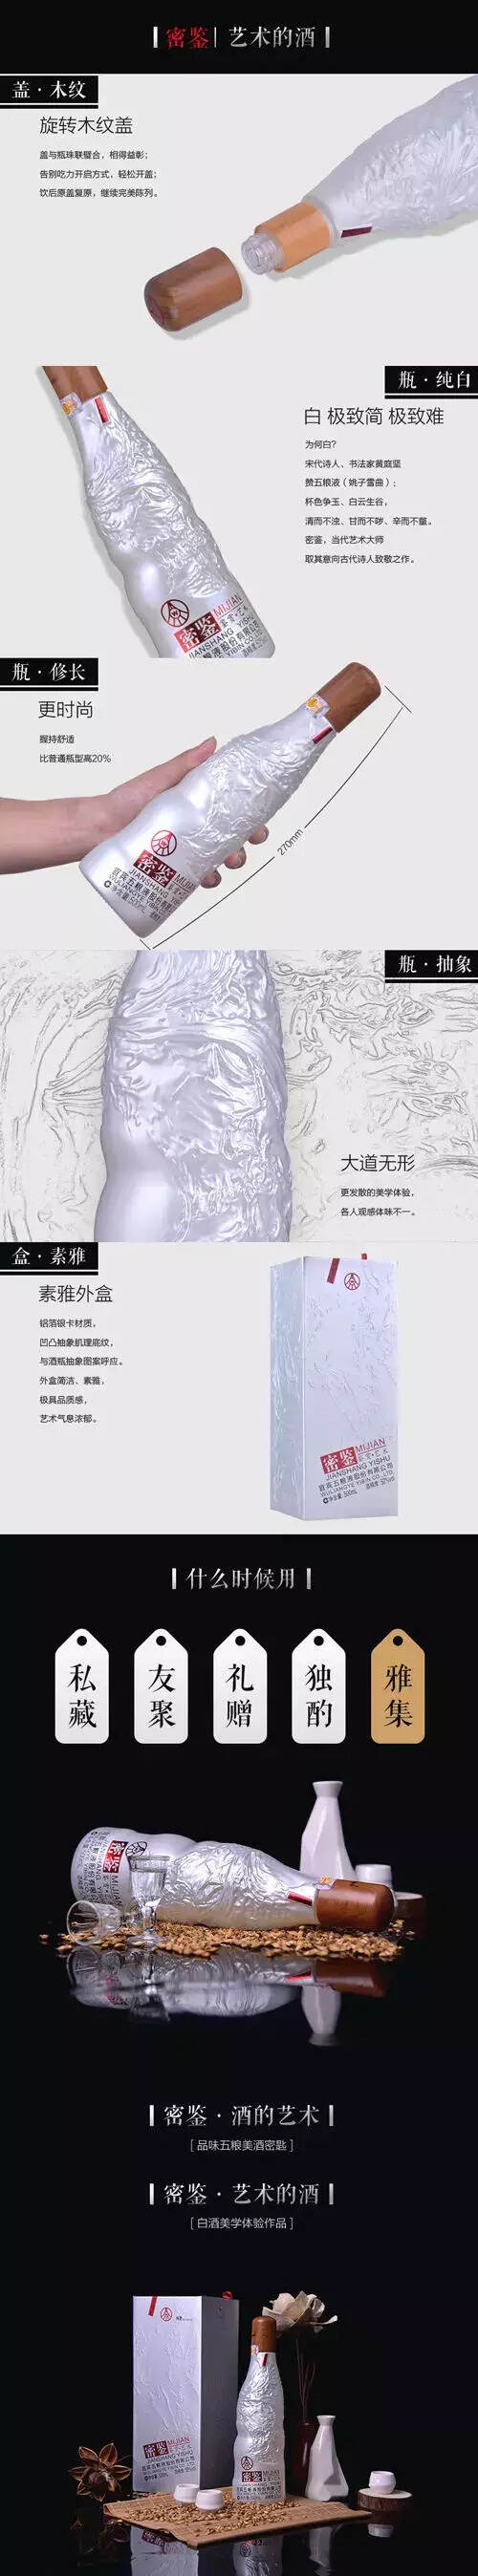 中国第一款艺术白酒——五粮液密鉴